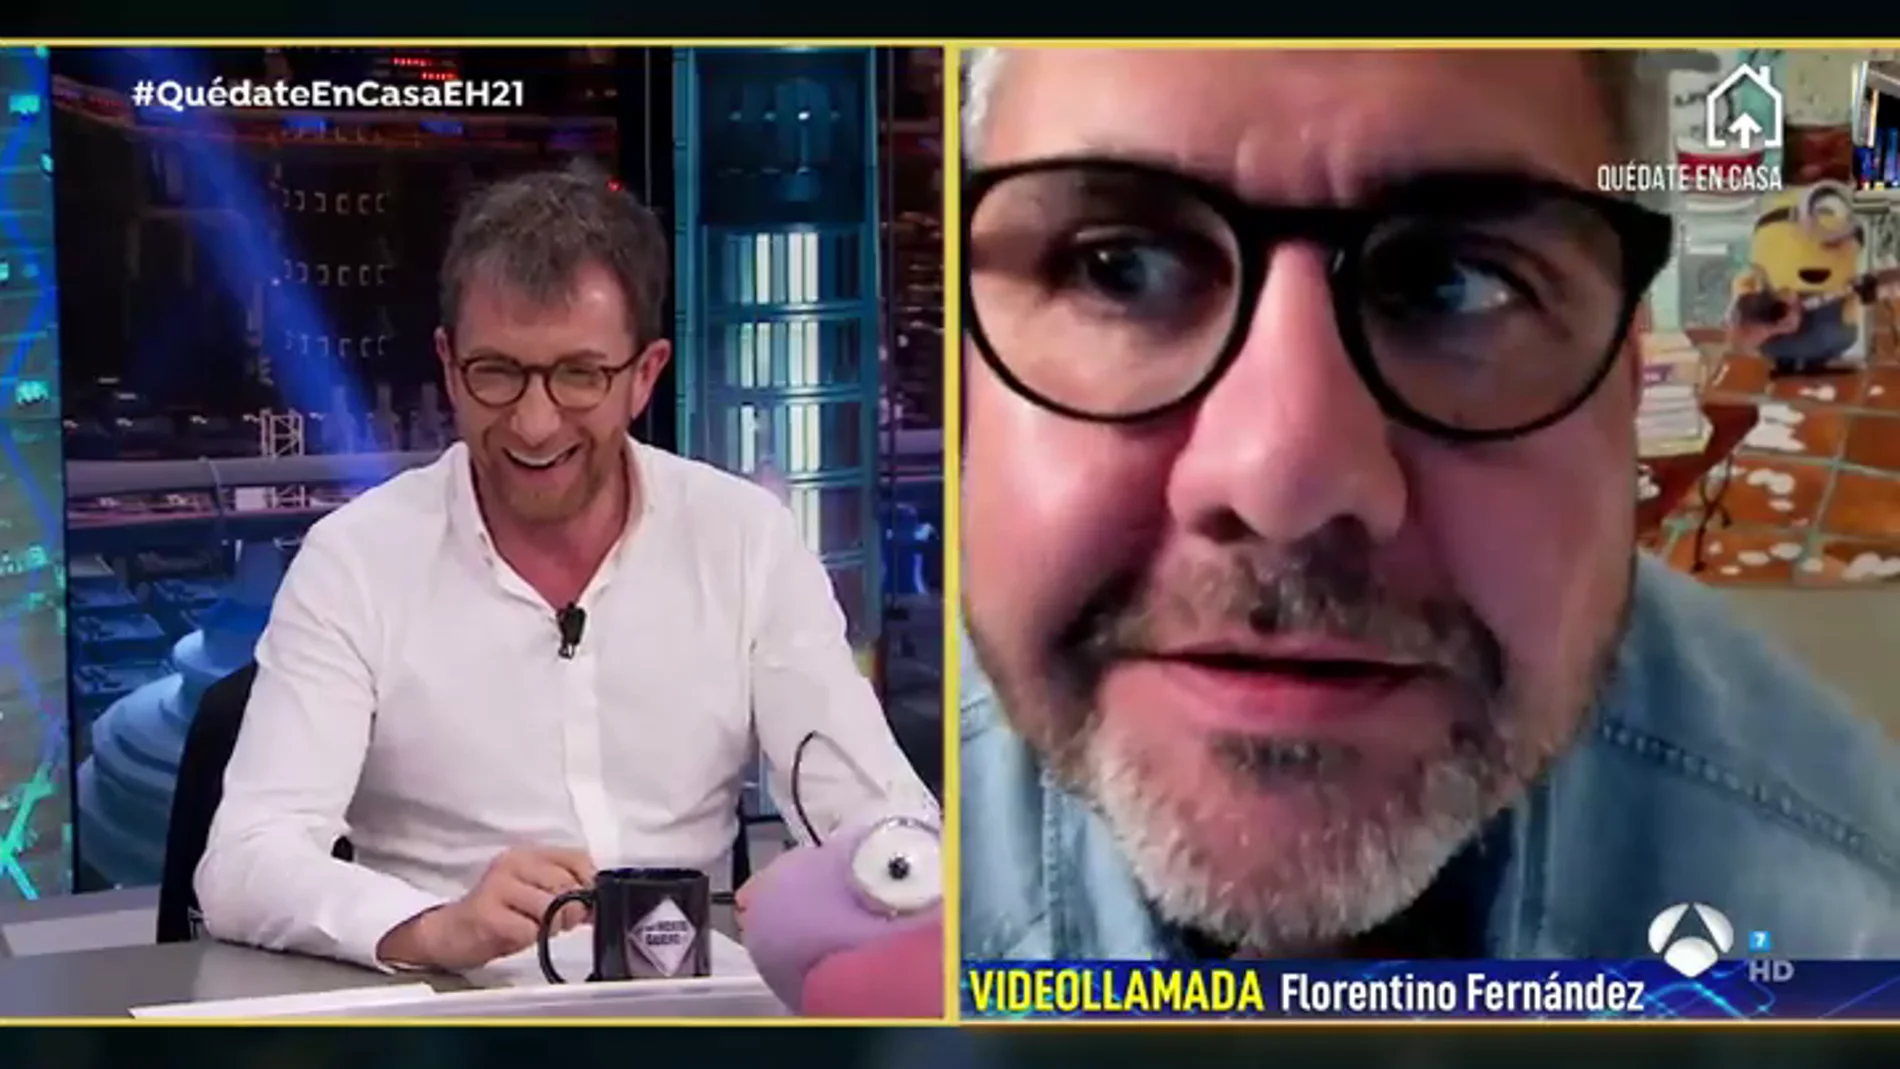 Florentino Fernández, 'avergonzado' tras mostrar su look durante la videollamada en 'El Hormiguero 3.0': "Estas cosas no son necesarias mostrarlas"